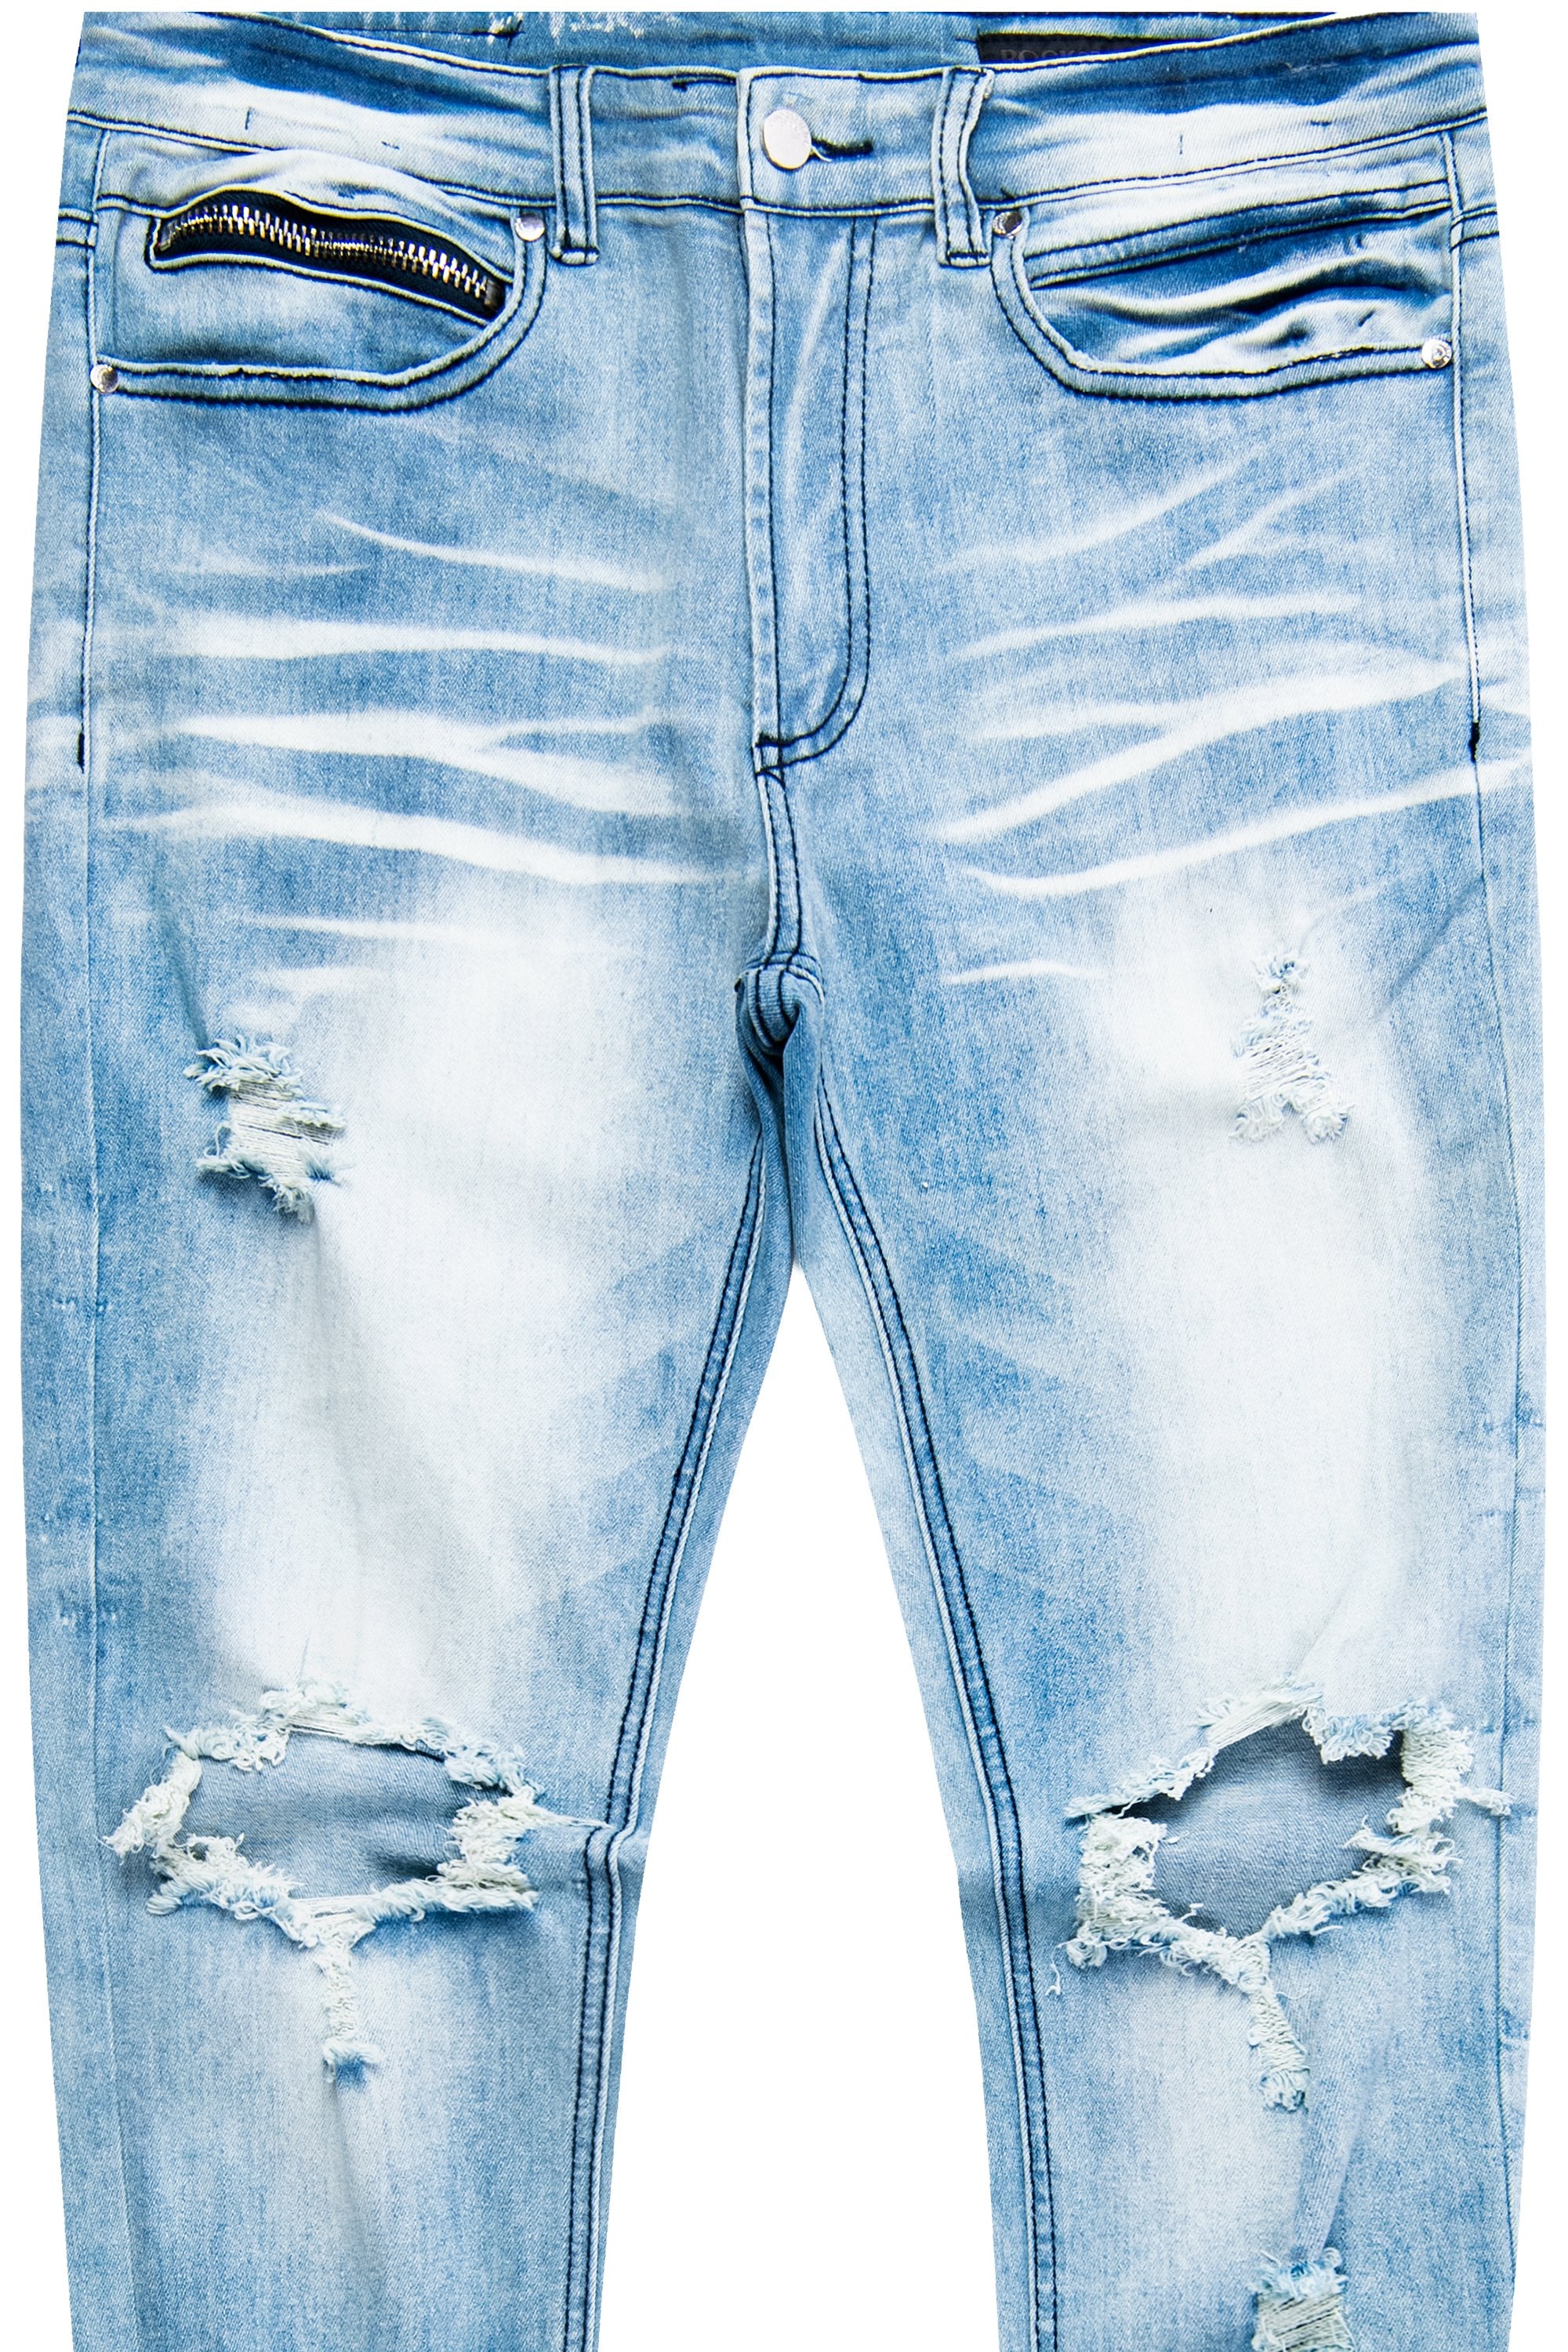 Jean- Original Blue– Dag Rockstar 5 Pocket